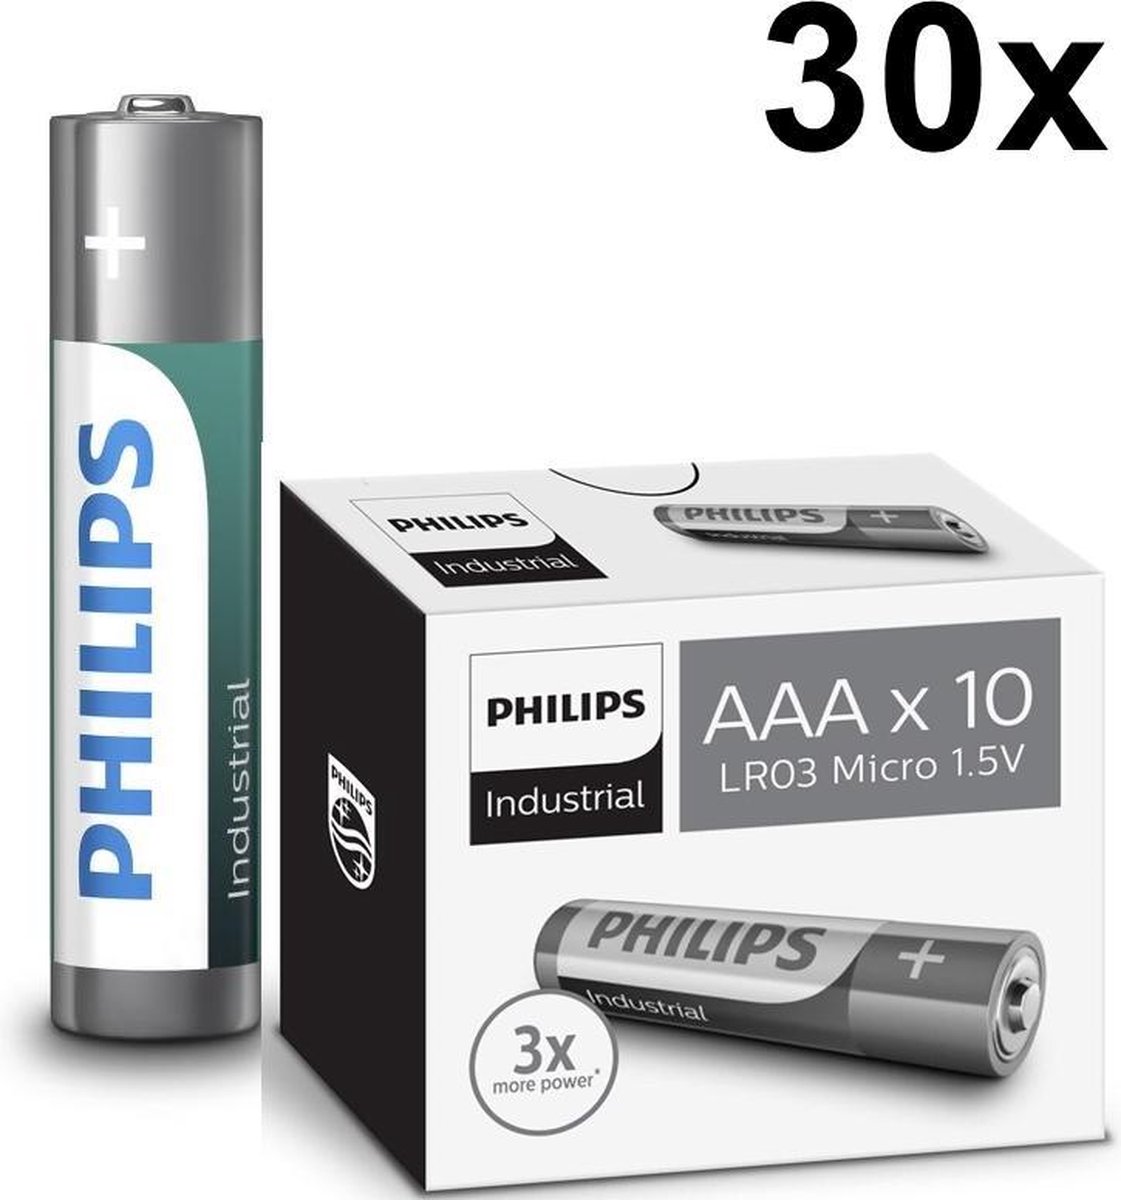 30 Stuks - AAA R3 Philips Industrial Power Alkaline